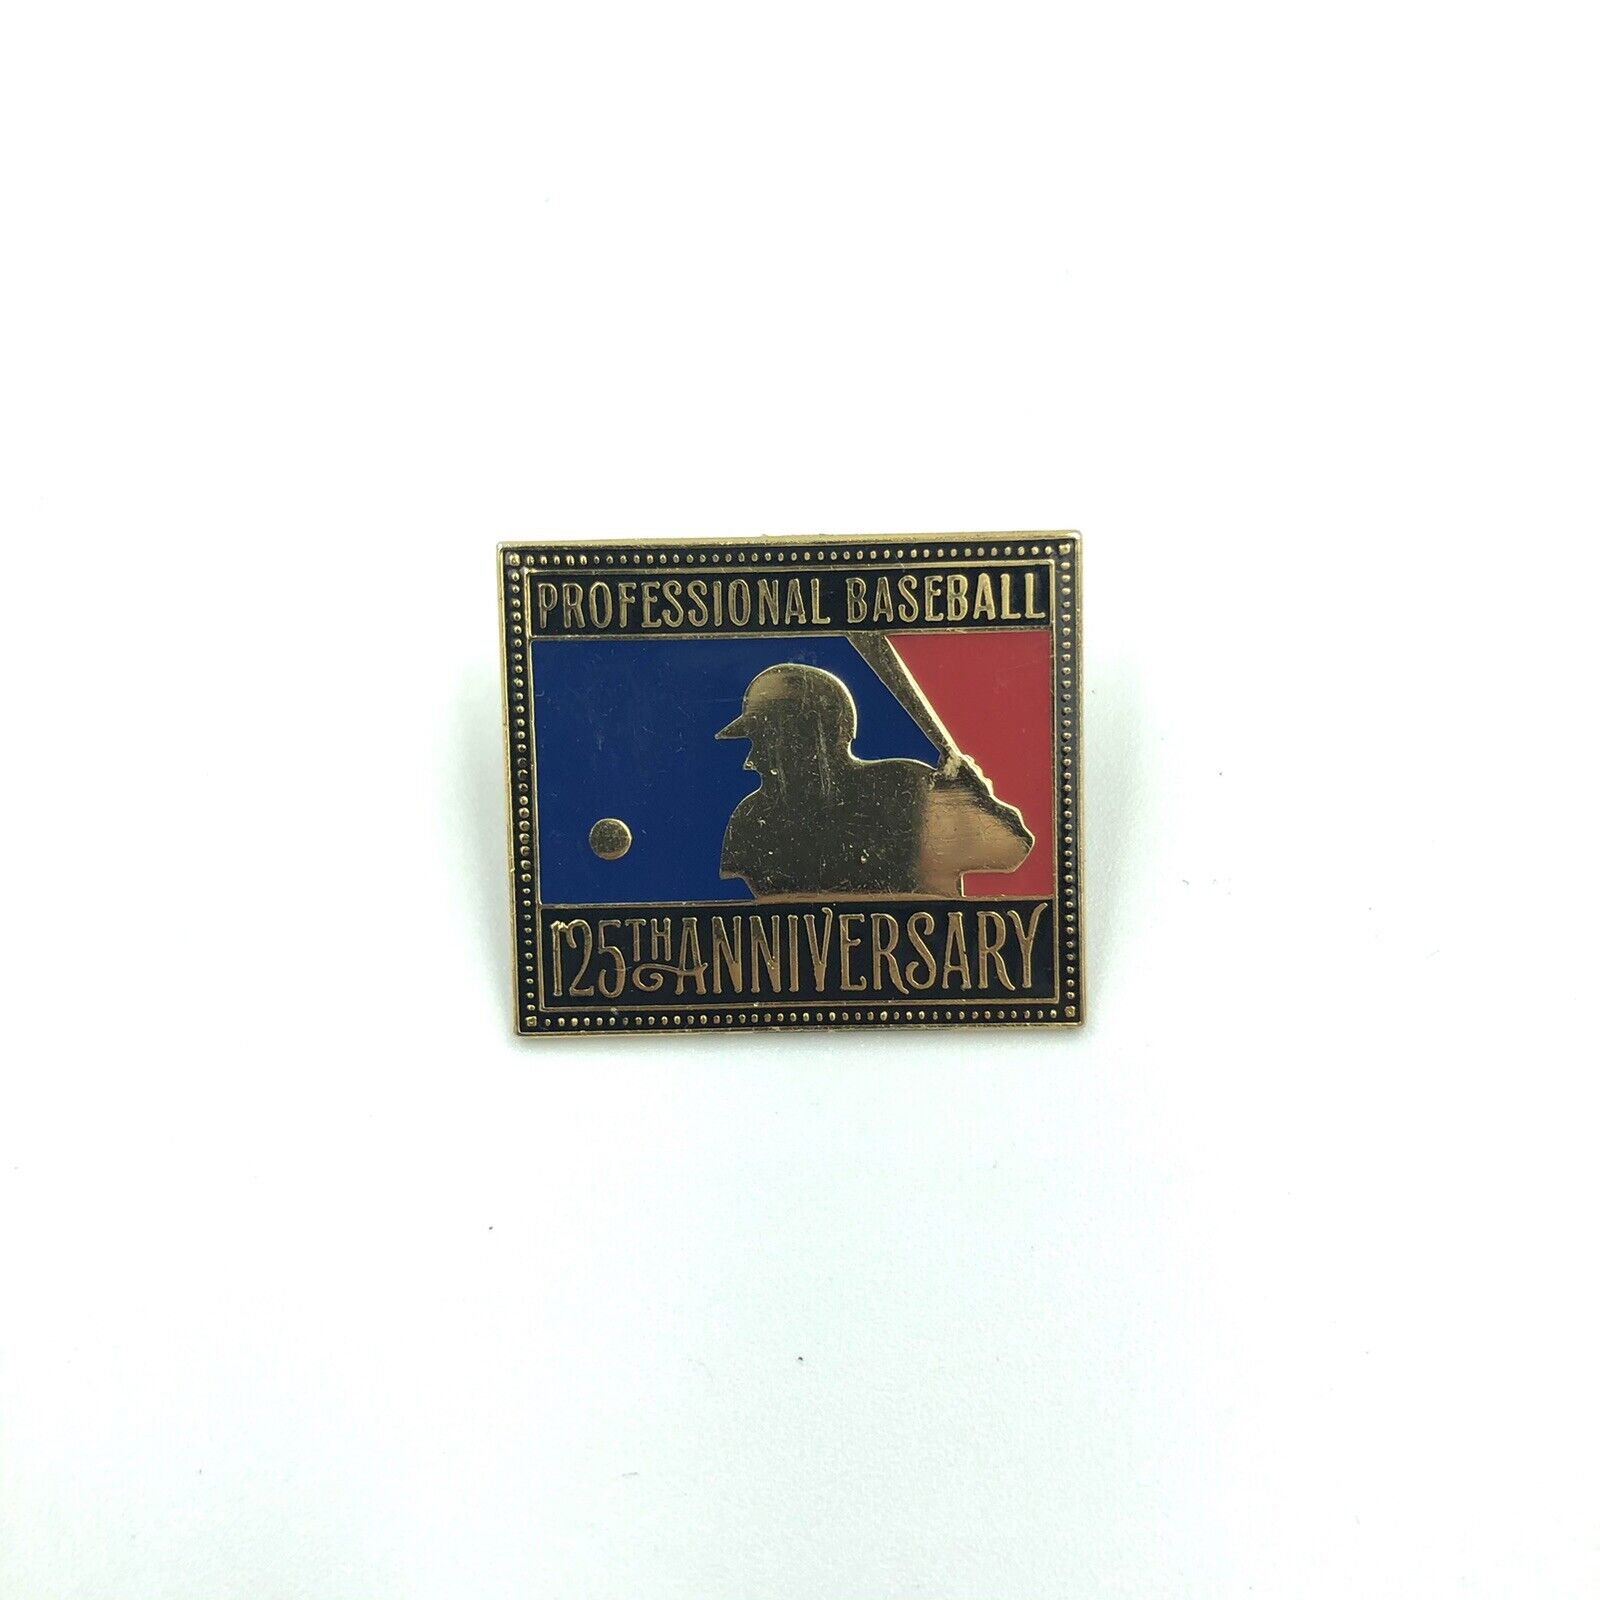 MLB Professional Baseball 125th Anniversary Pin 1994